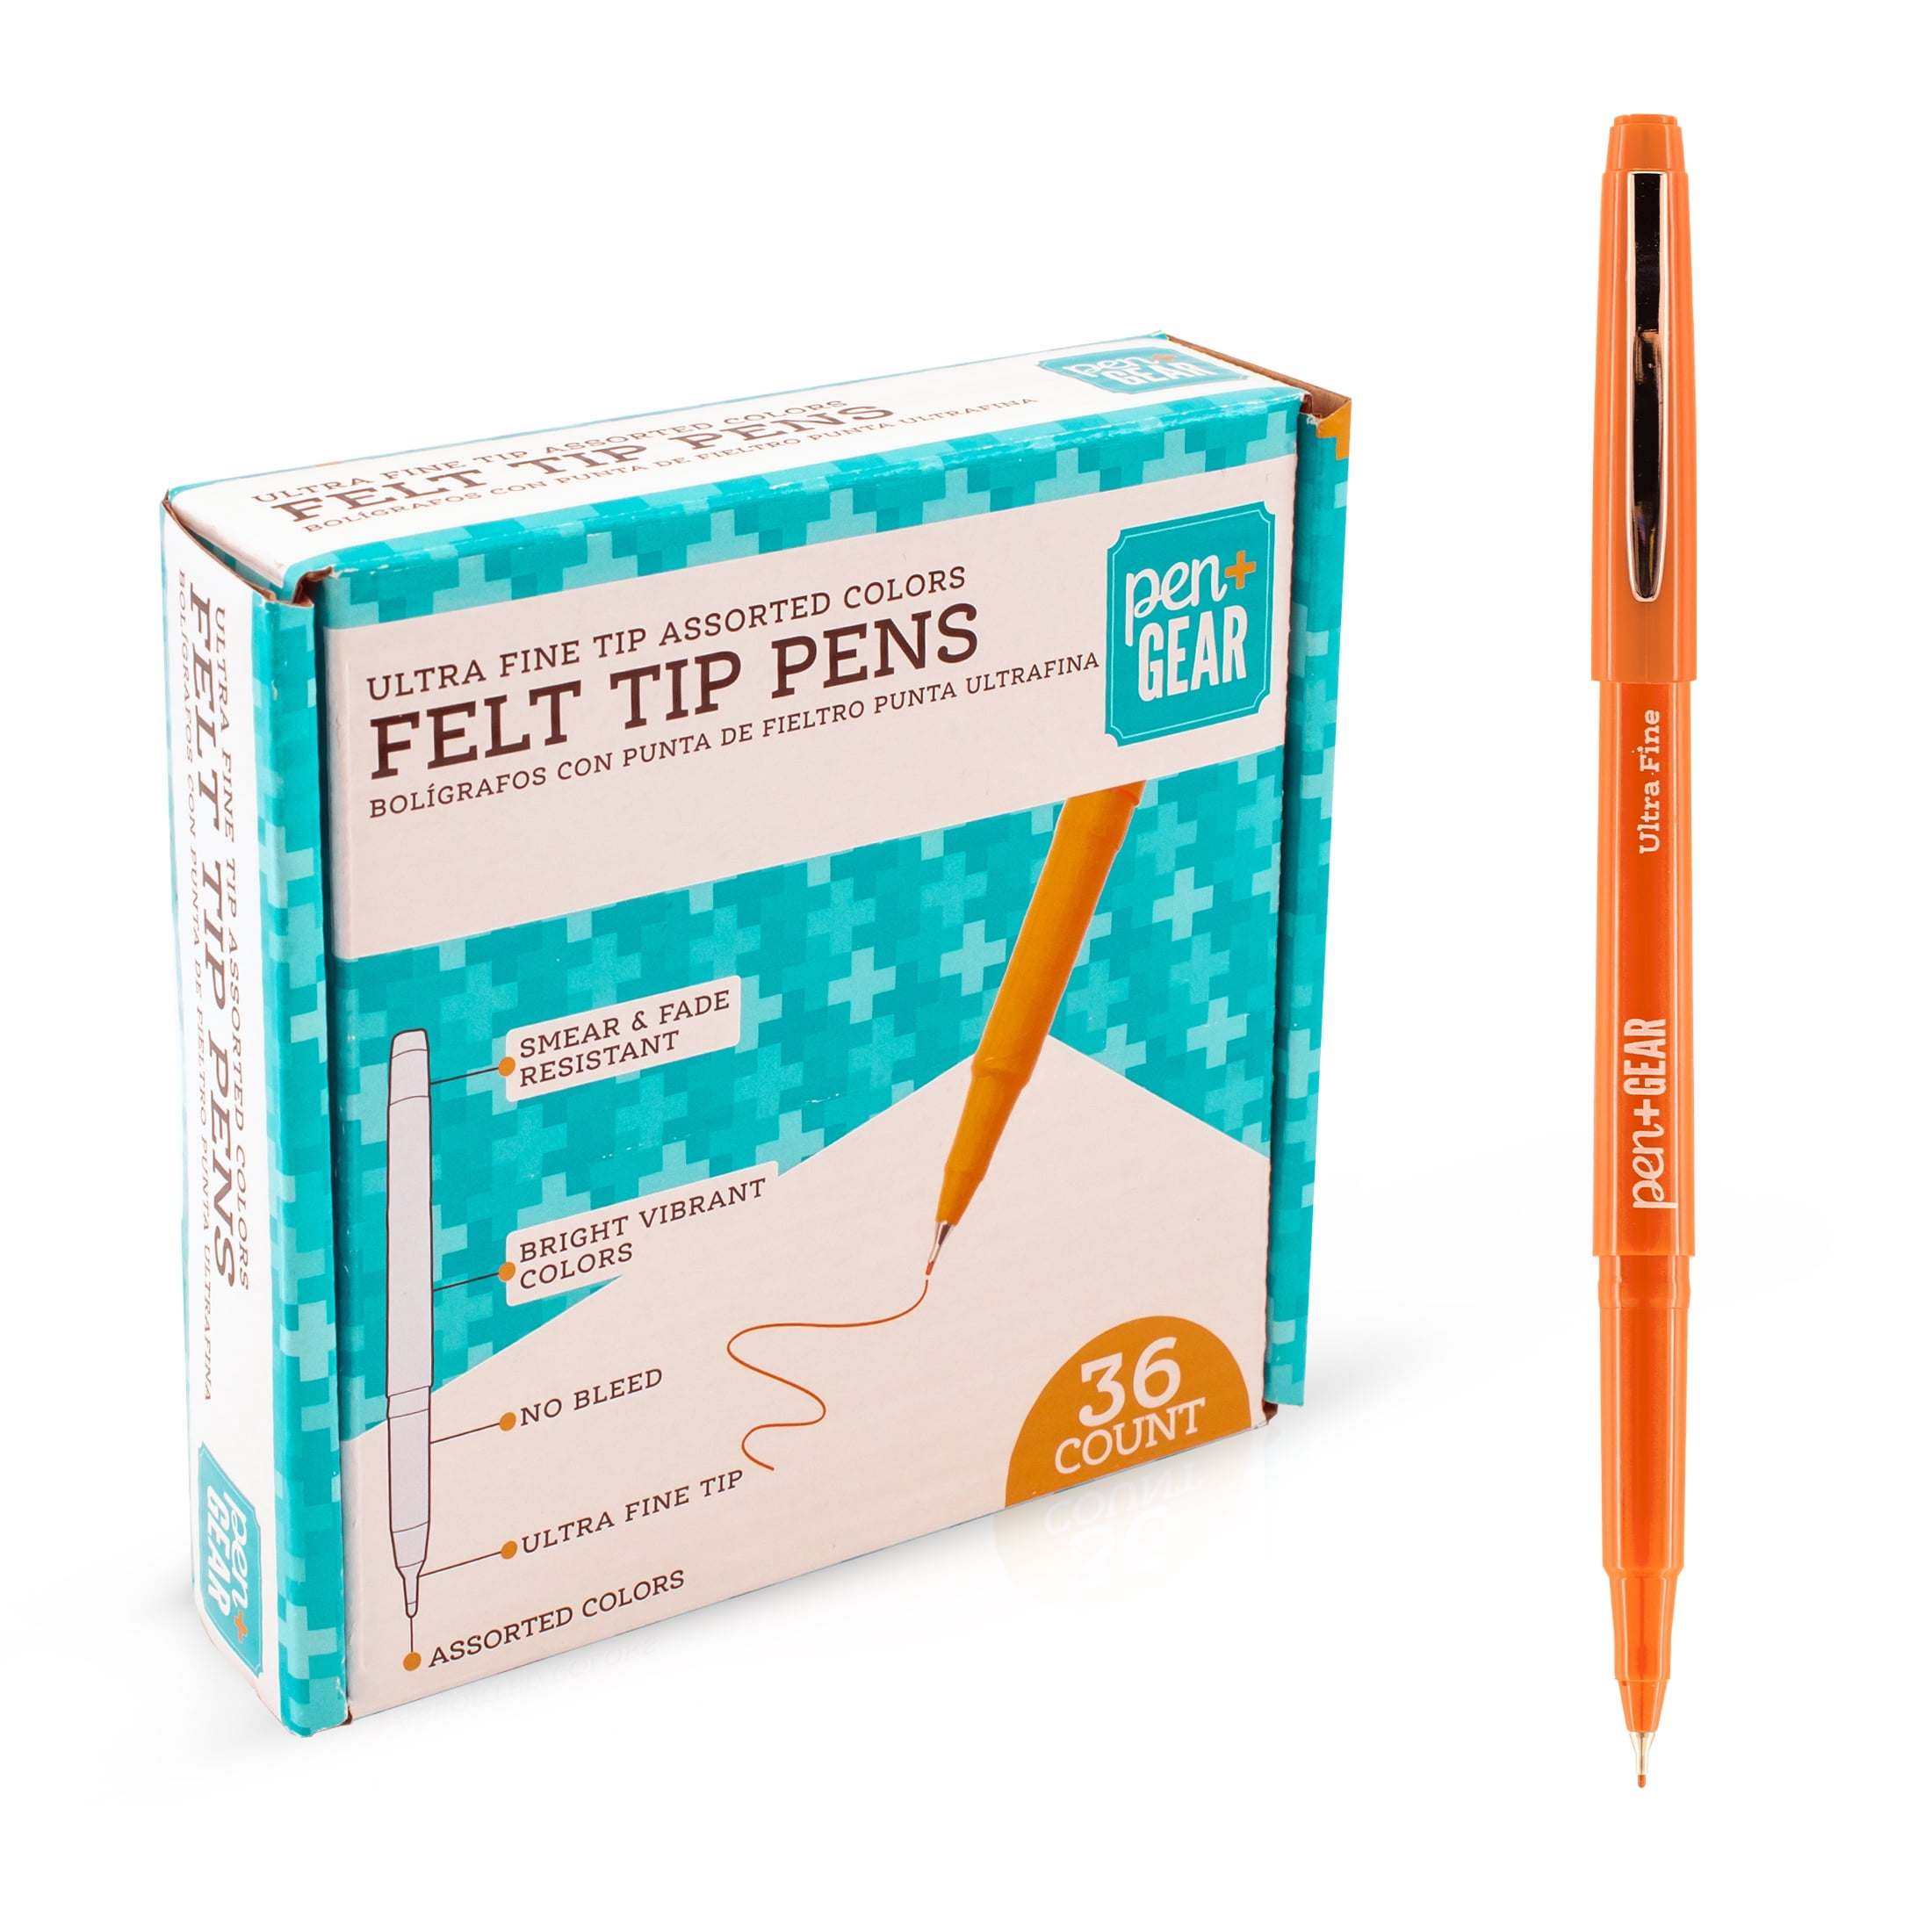 Pen + Gear Felt Tip Pens, Ultra Fine Tip, 36 Count 